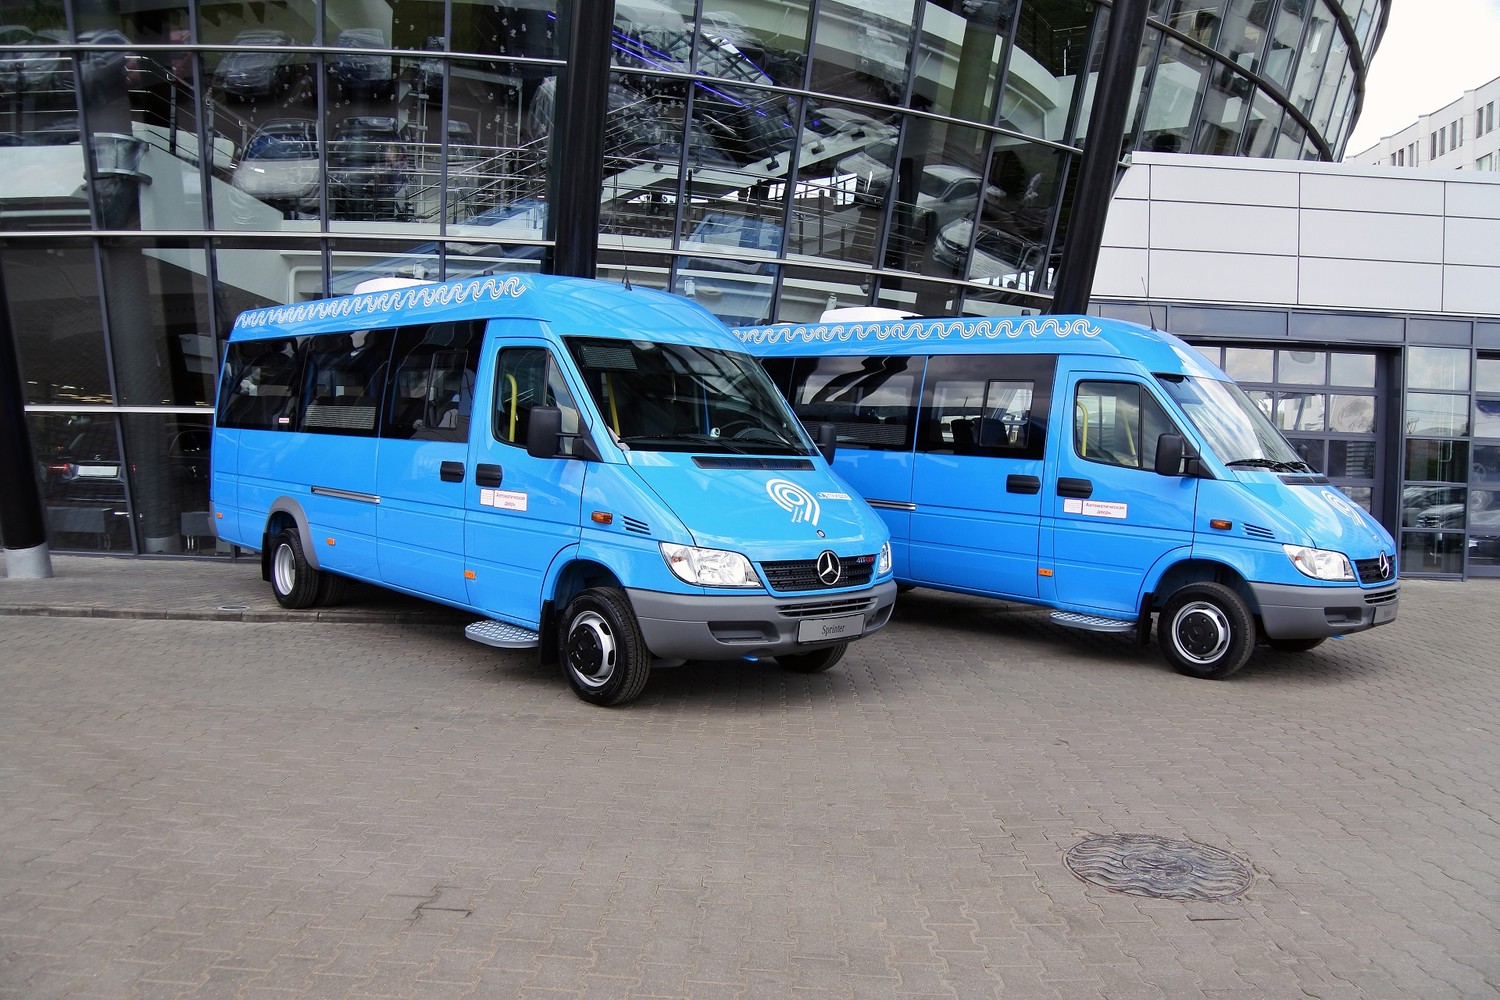 Около 100 новых автобусов малой вместимости поступило в парк Мосгортранса